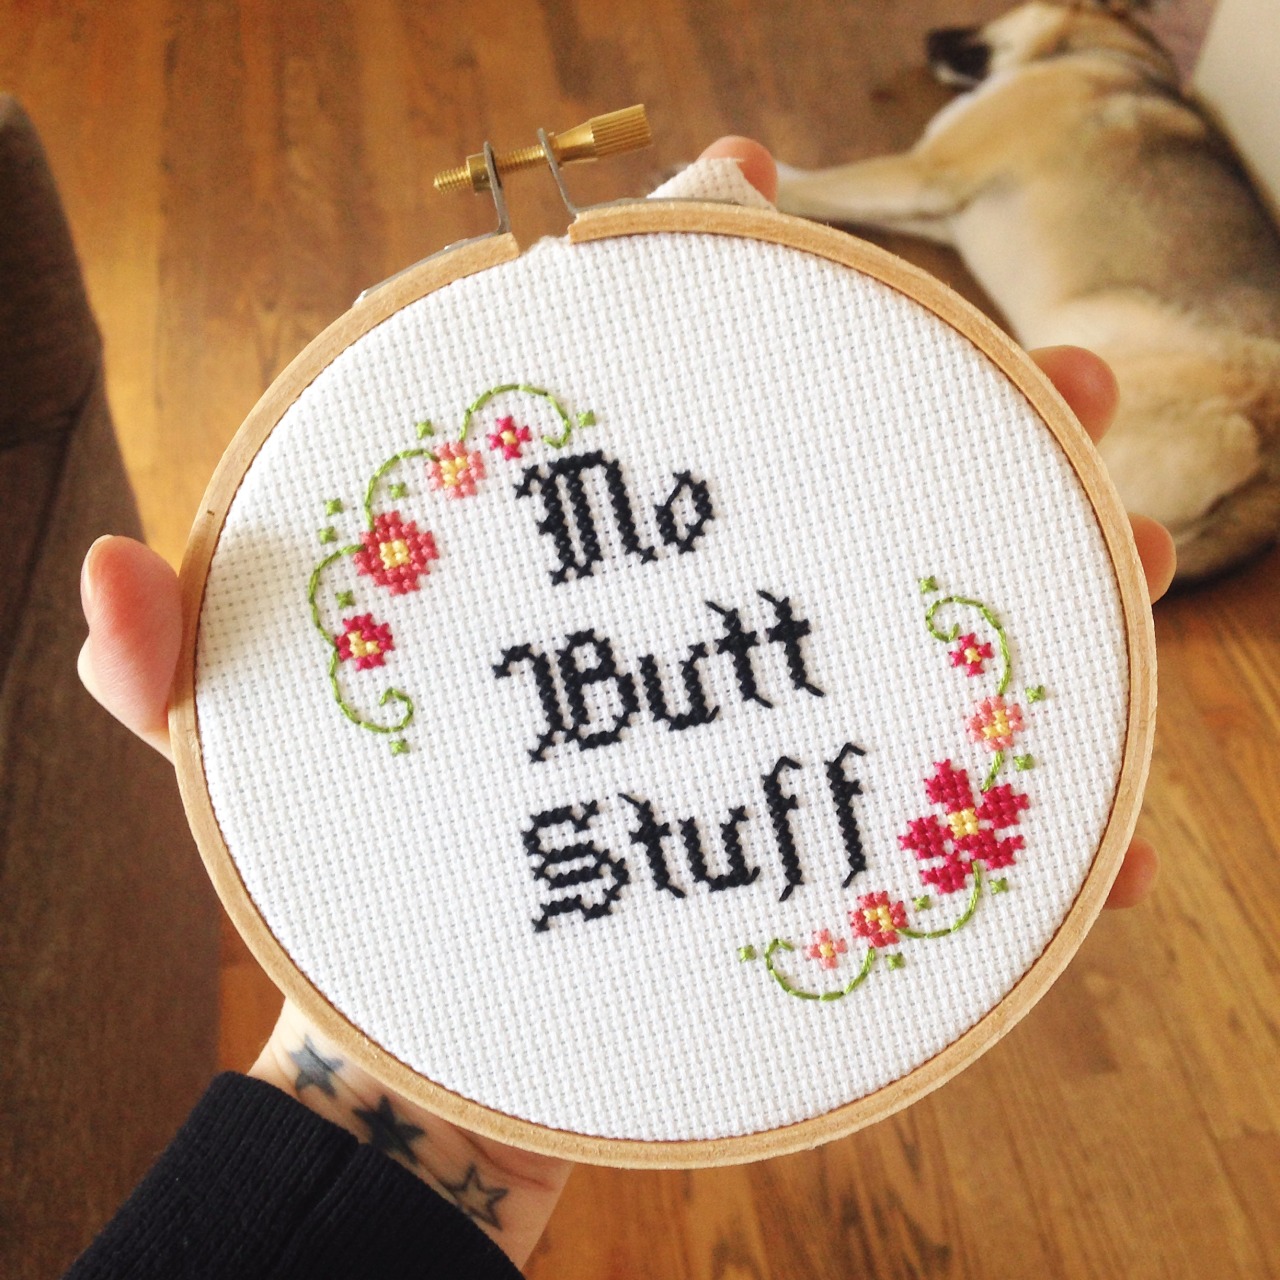 No Butt Stuff